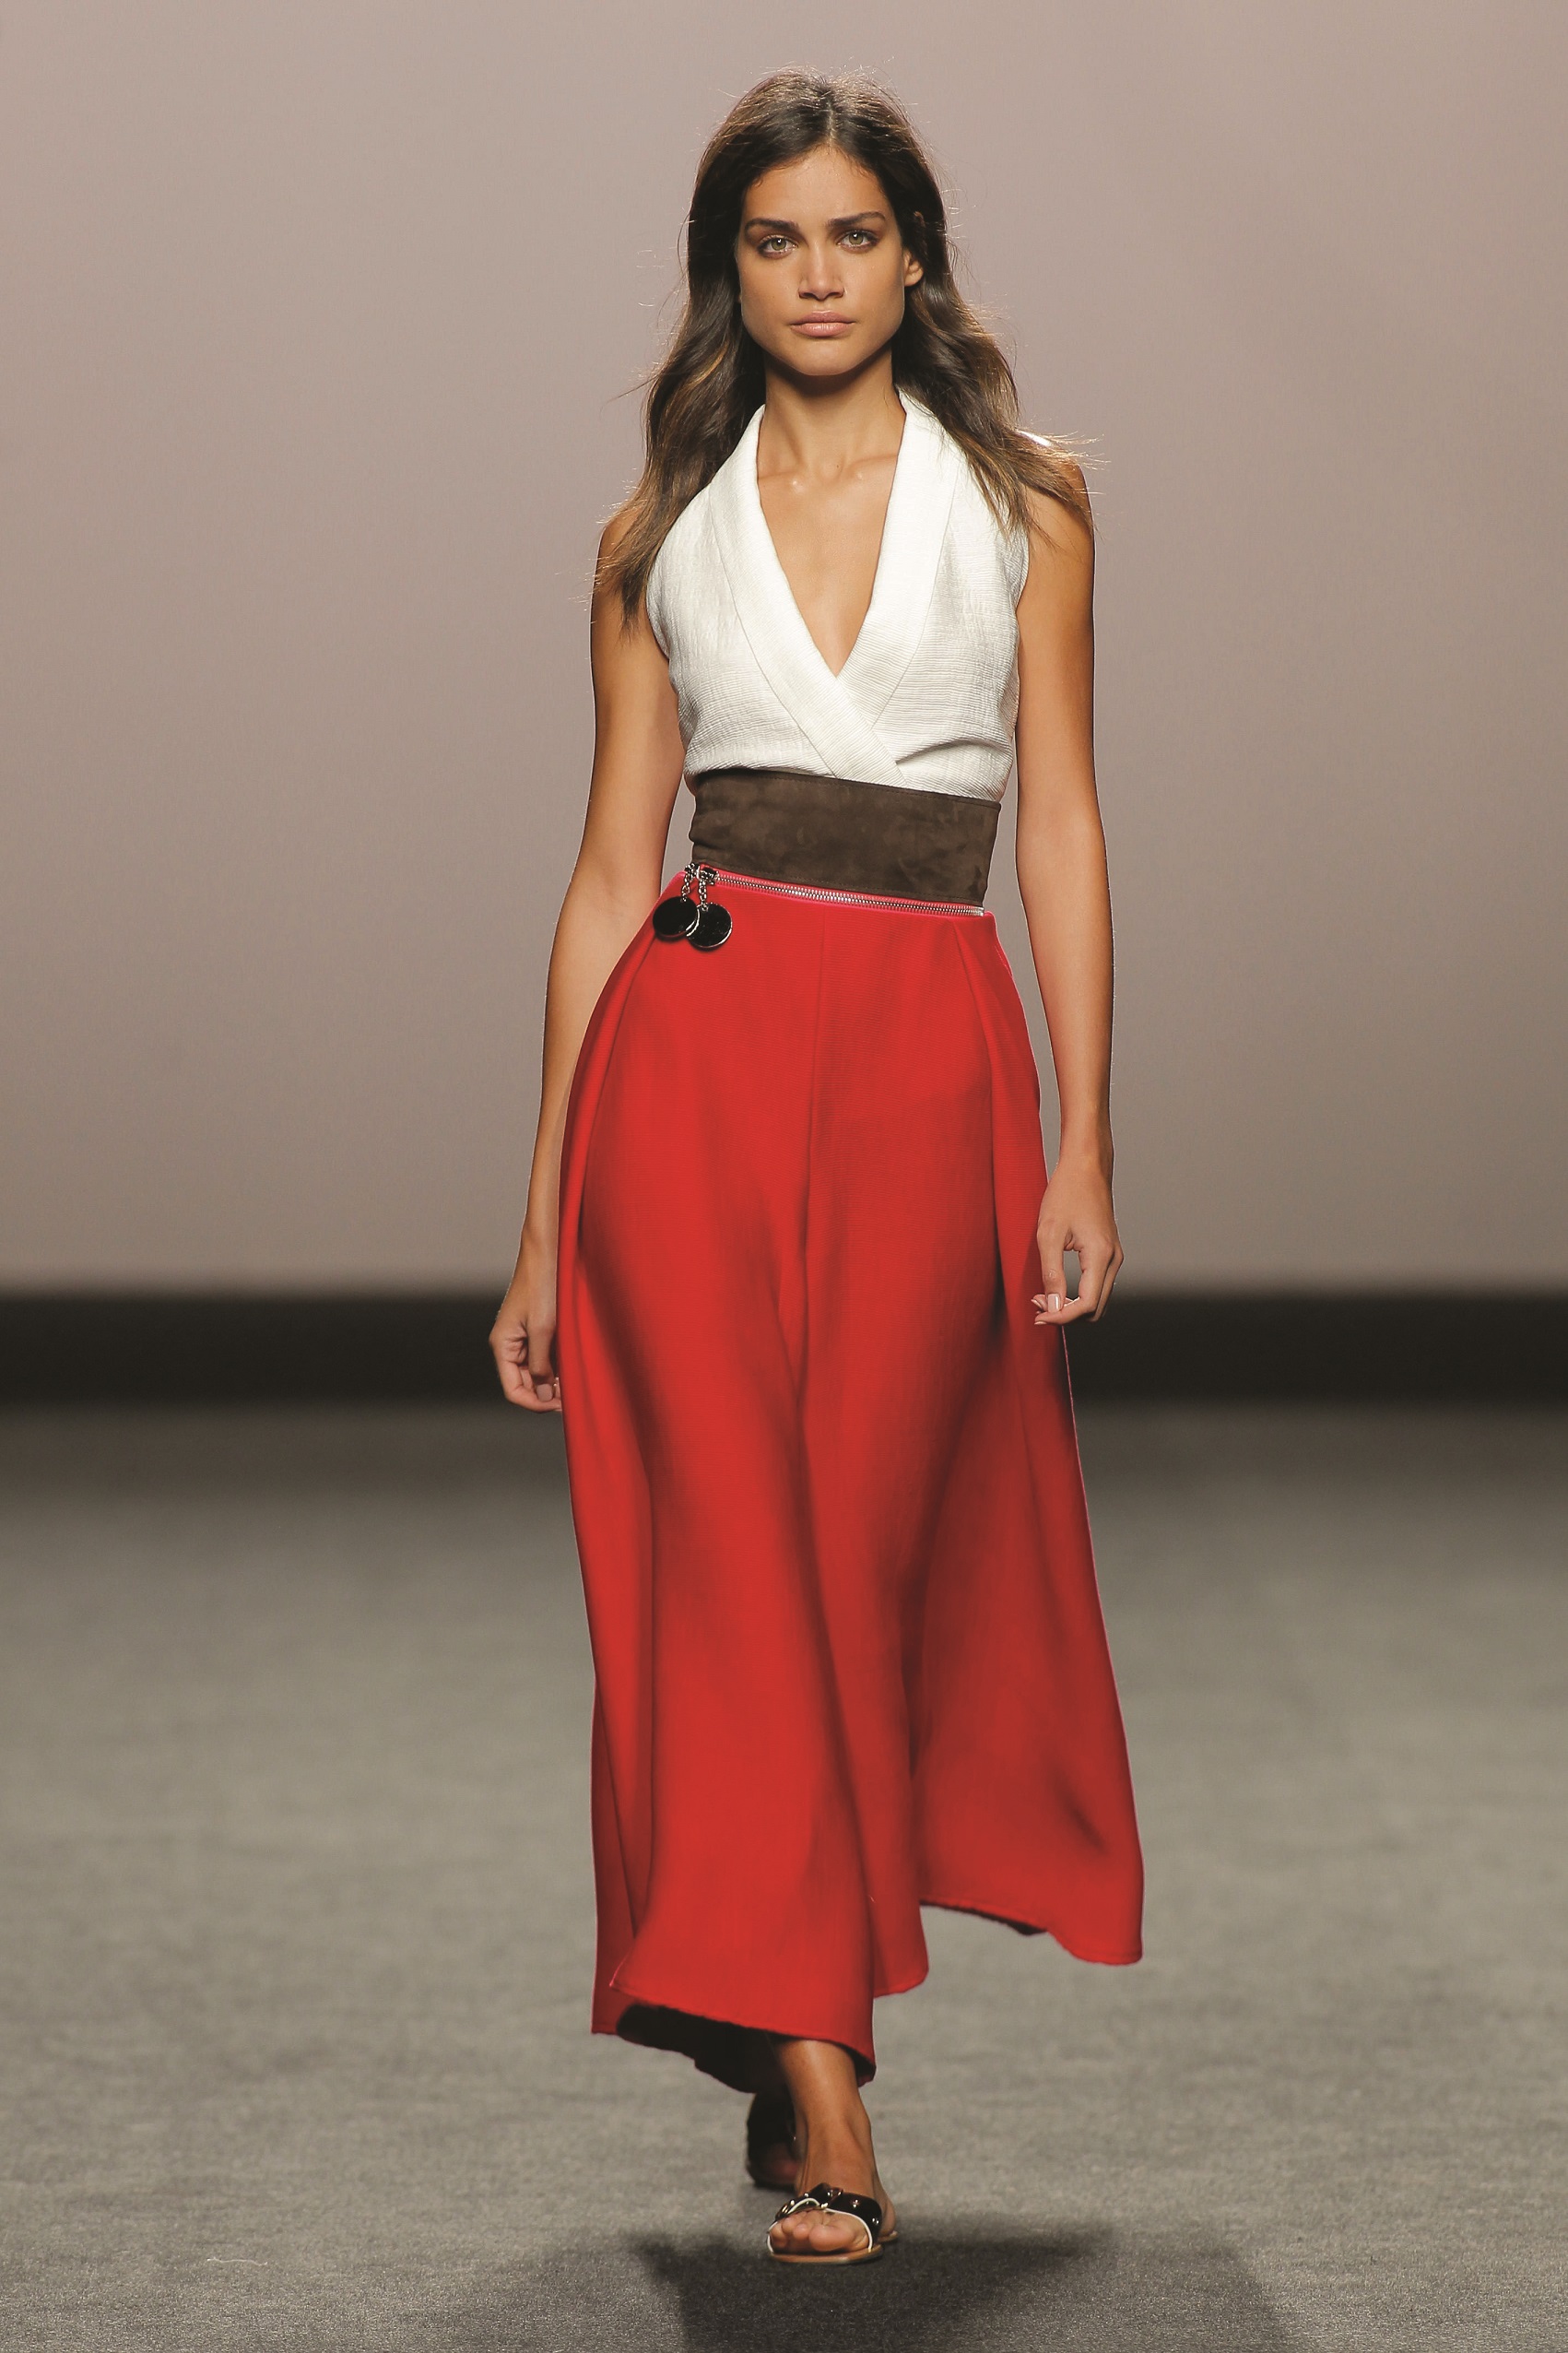 Marcos Luengo: White Halter Top, Red Full Length Skirt, Leather Belt 